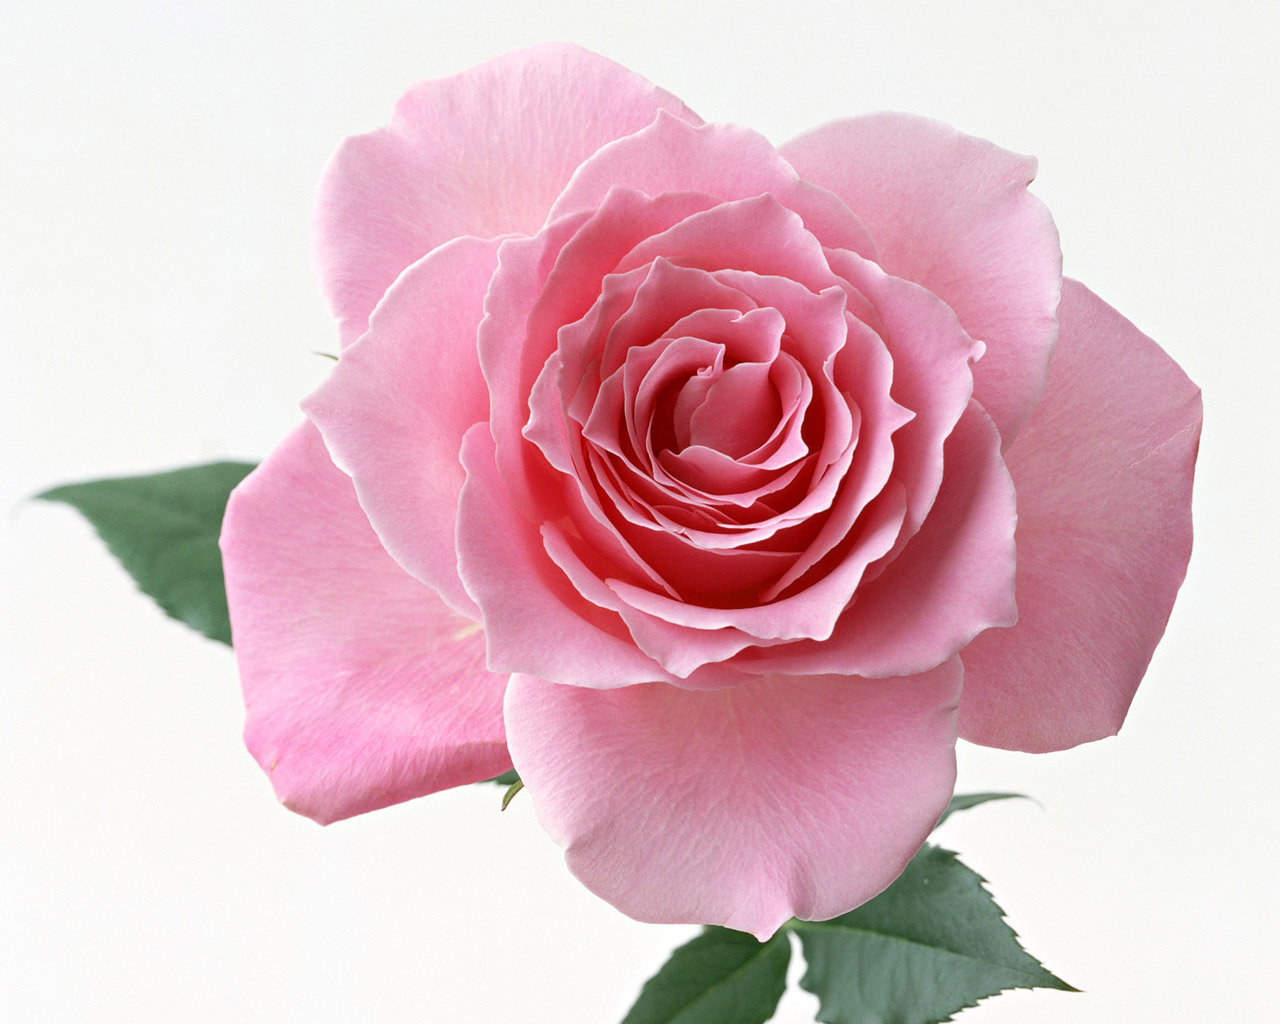 Vẽ hoa hồng xanh đẹp như mơ là một trải nghiệm tuyệt vời cho những ai yêu thích nghệ thuật. Hình ảnh của những bông hoa hồng xanh sẽ chinh phục trái tim bạn với sự tươi mới và độc đáo. Hãy dành thời gian để chiêm ngưỡng một tác phẩm nghệ thuật đầy mê hoặc và thưởng thức sắc màu tinh tế của vẽ hoa hồng xanh.